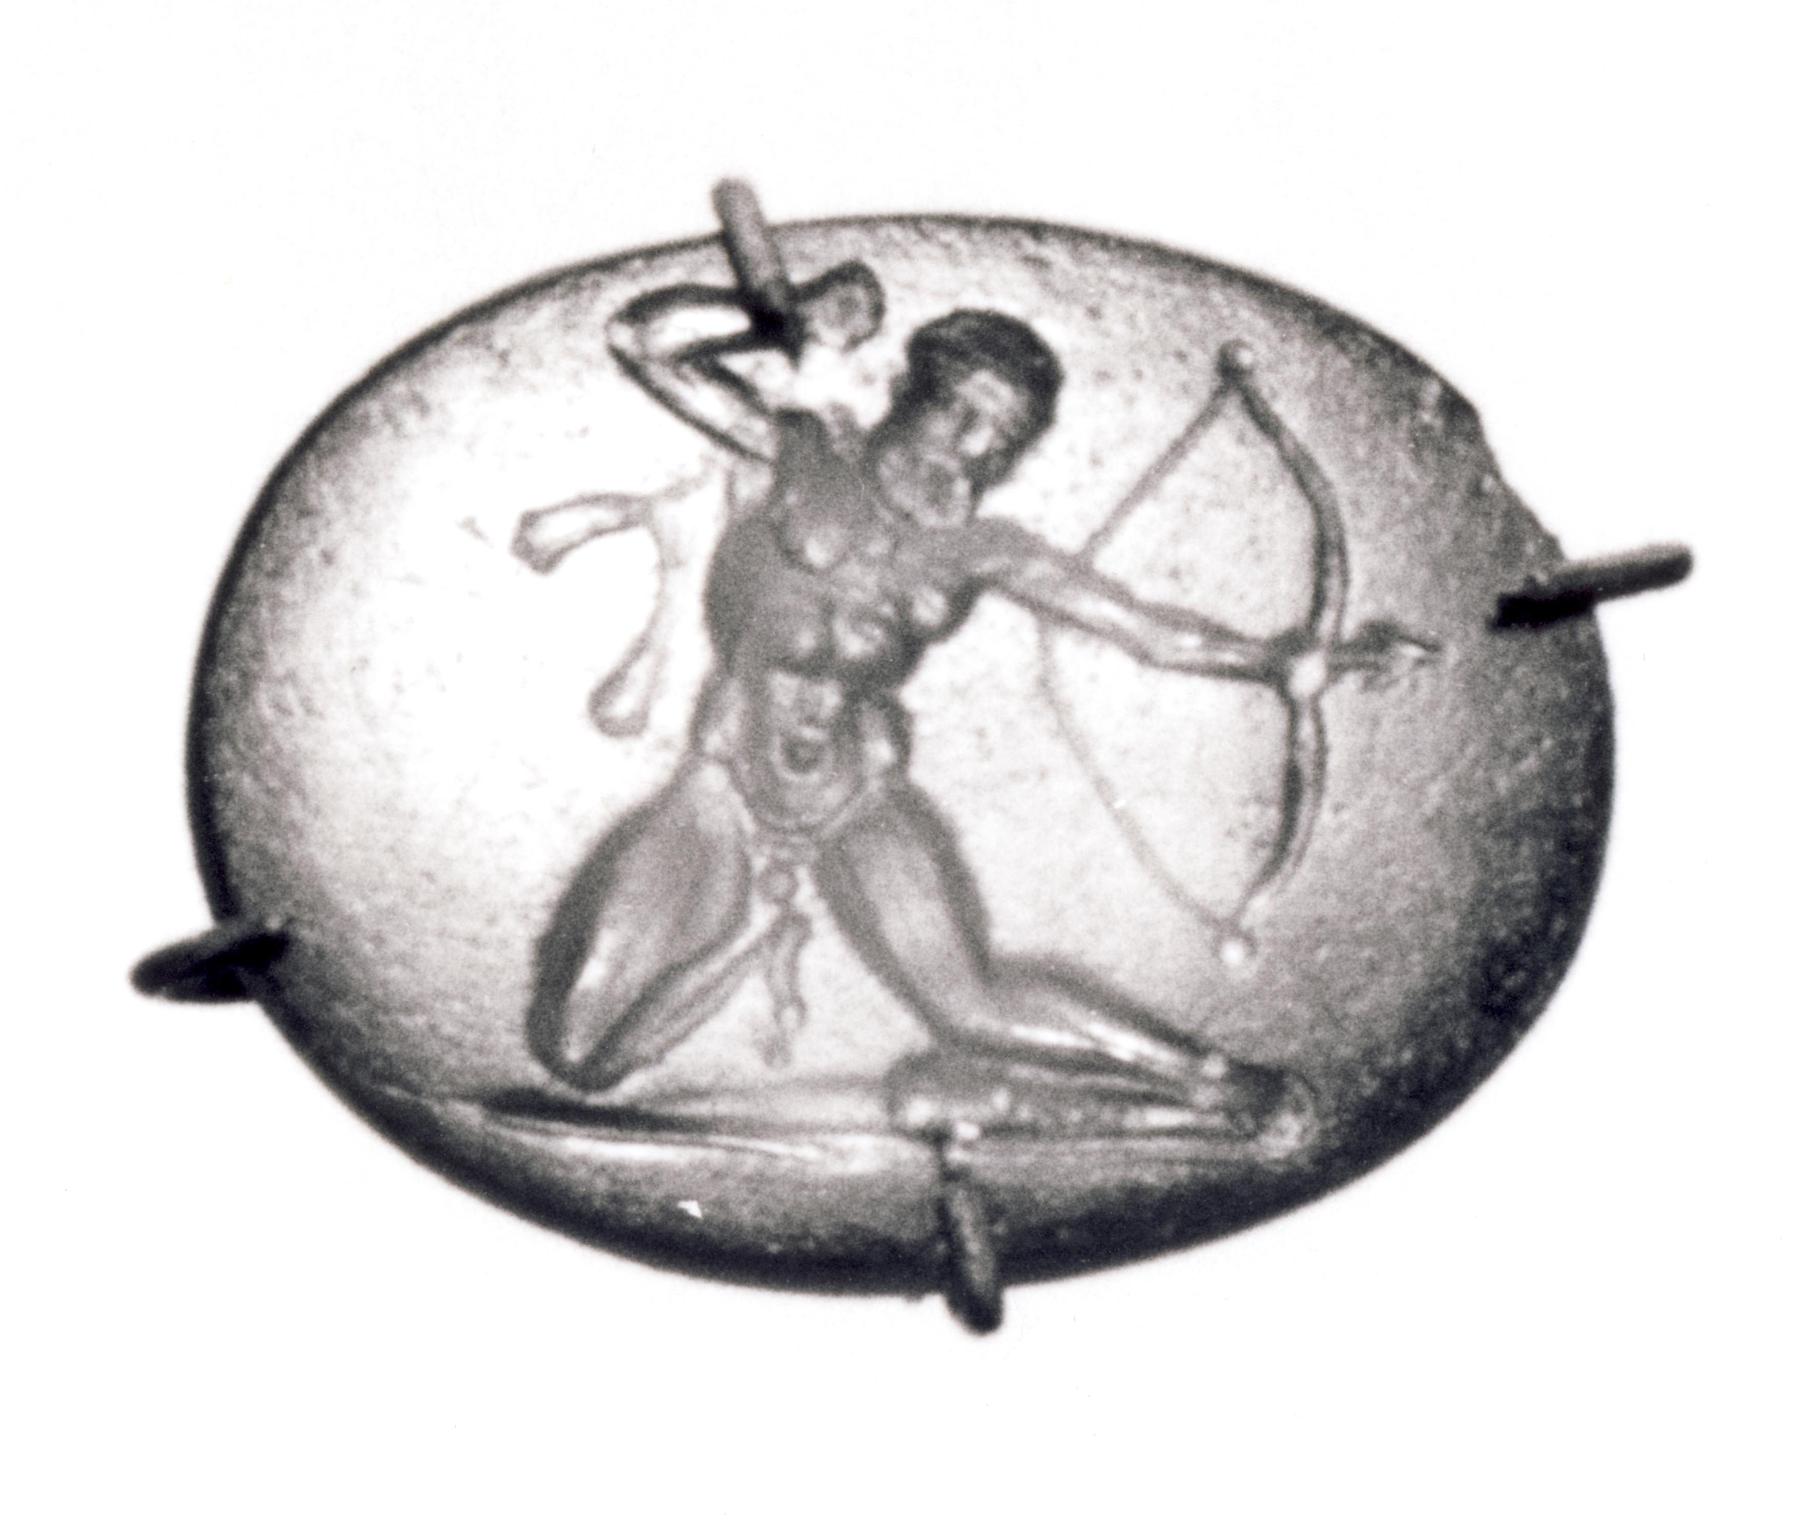 Herakles knælende med bue og pil, I819